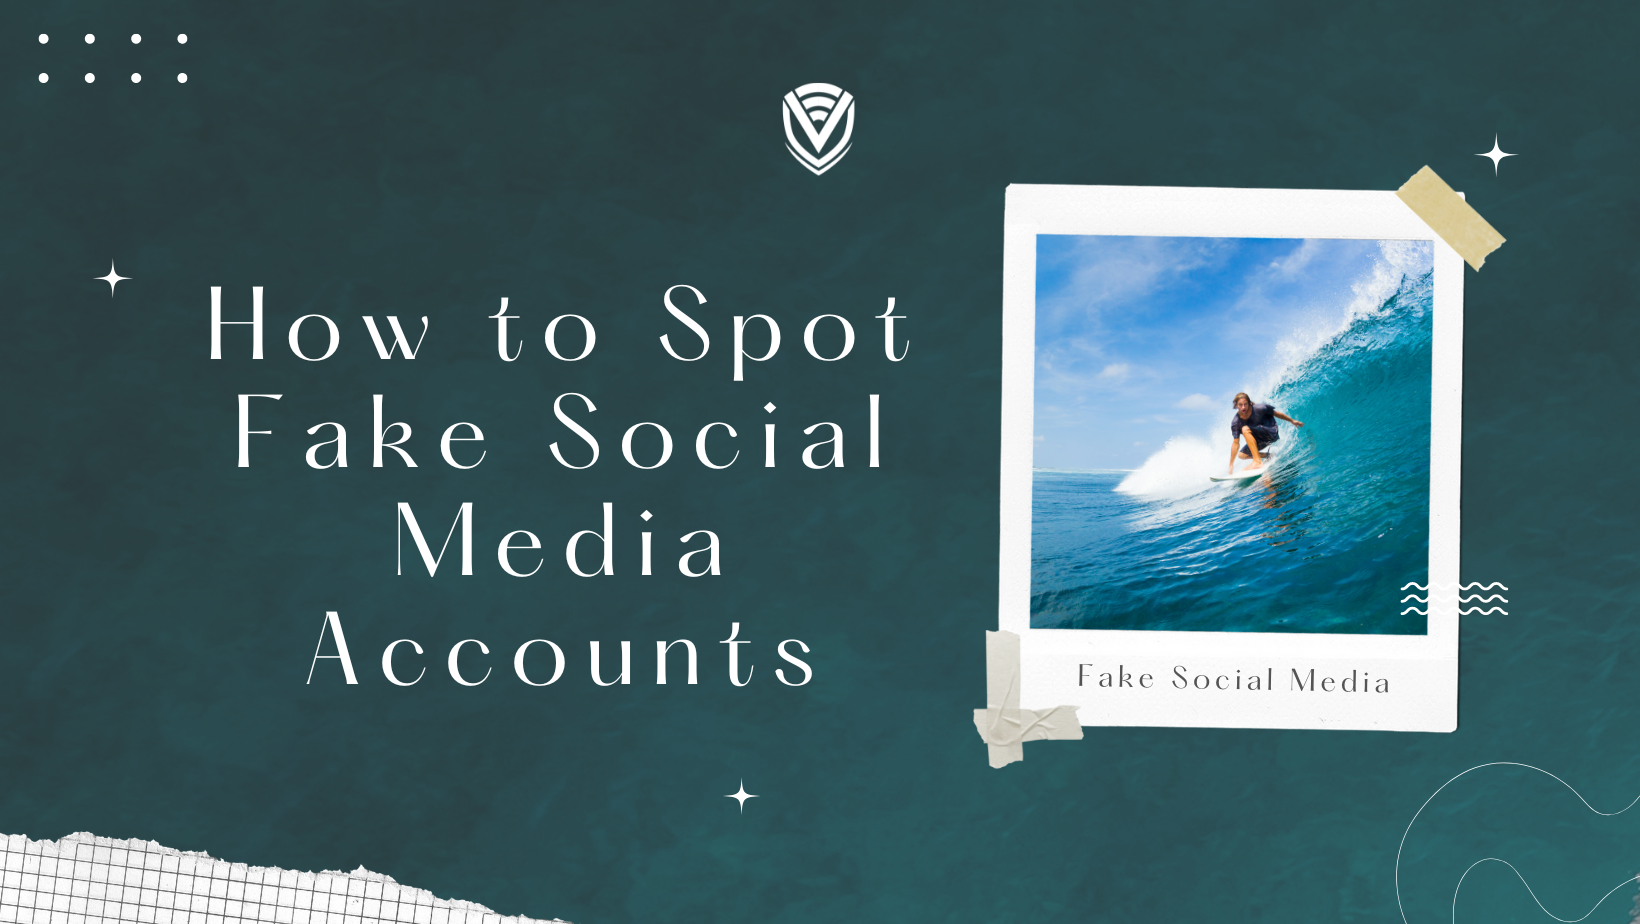 How to Spot Fake Social Media Accounts